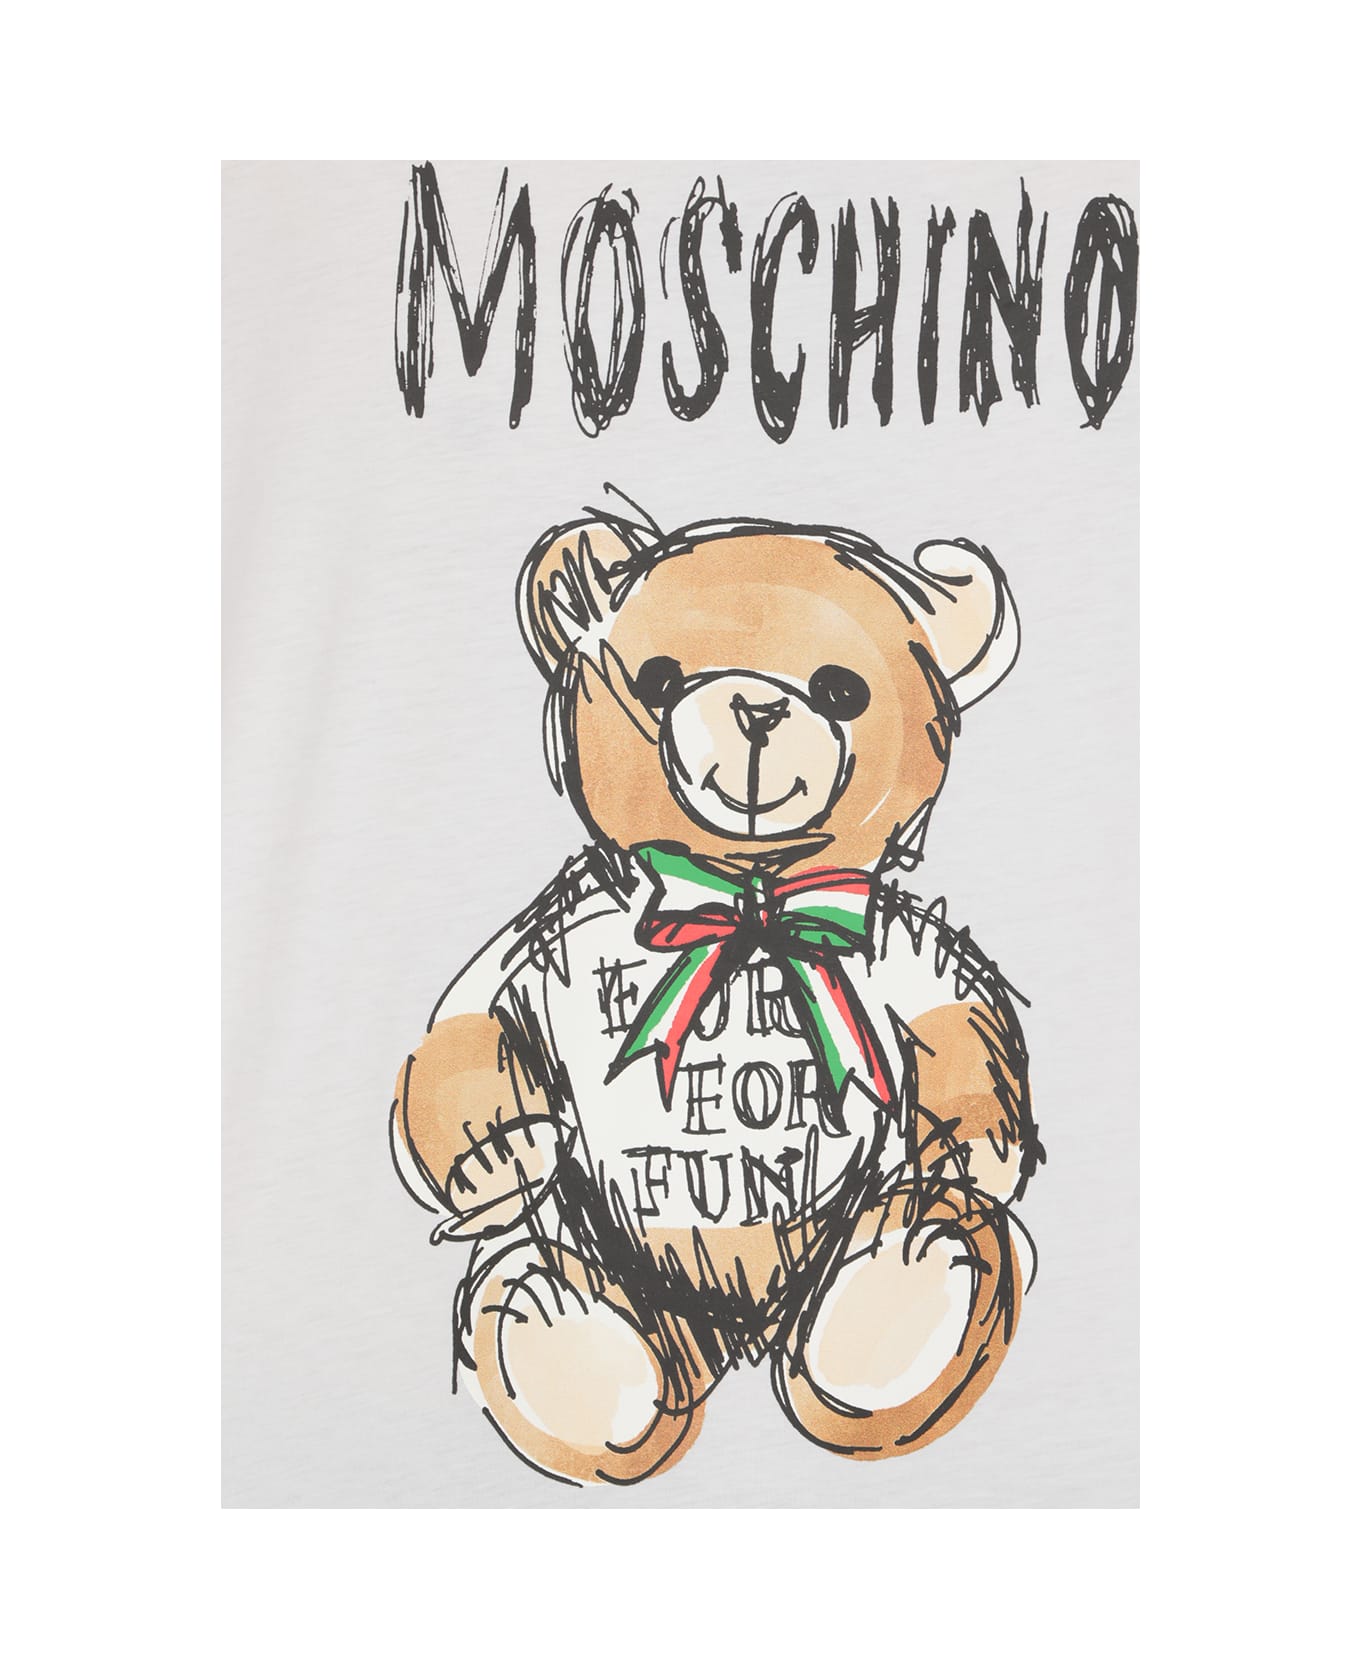 Moschino T-shirt With Logo - White